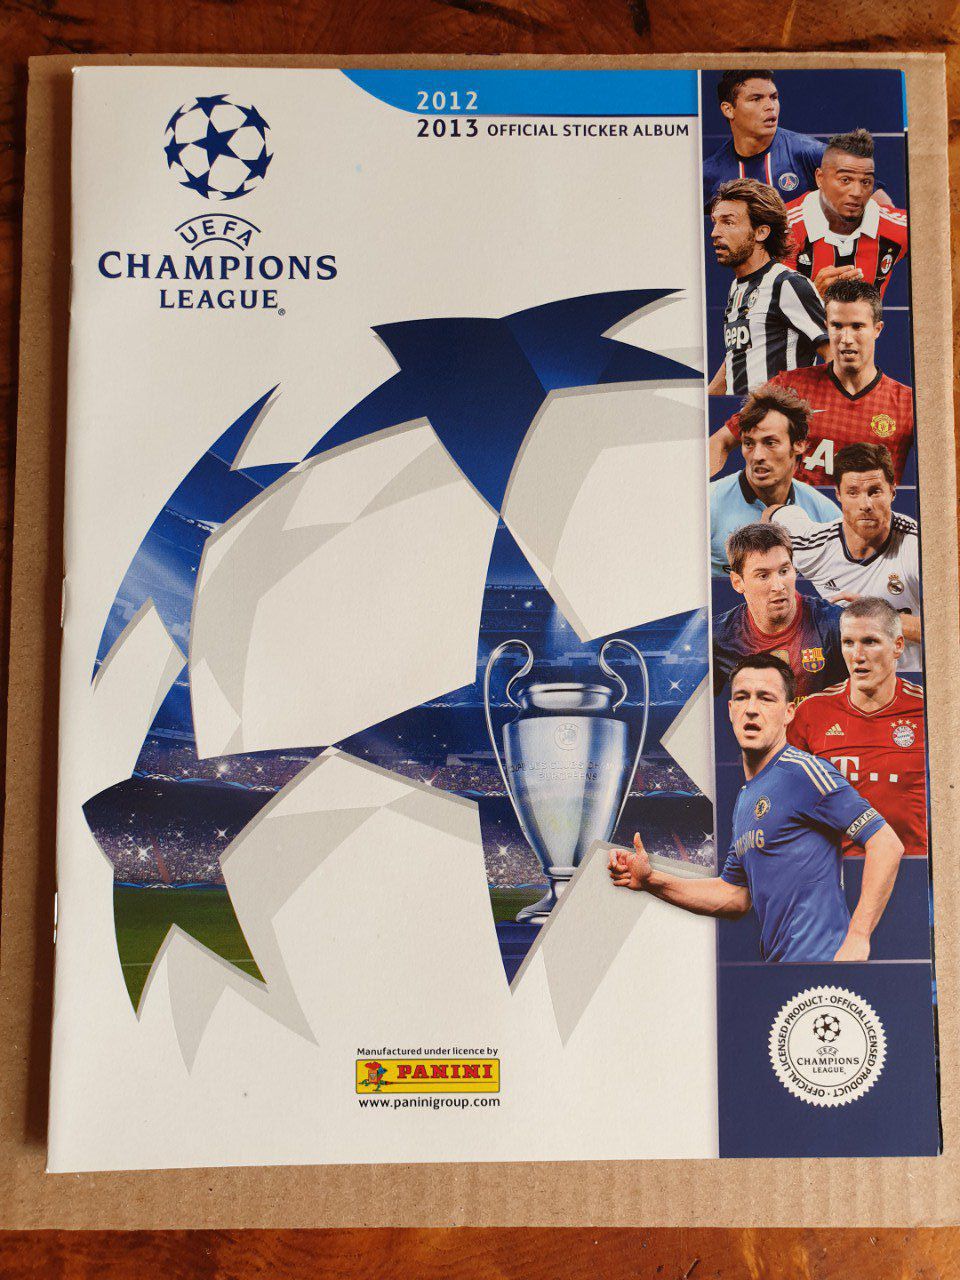 Champions League 2012/2013 Album Vide